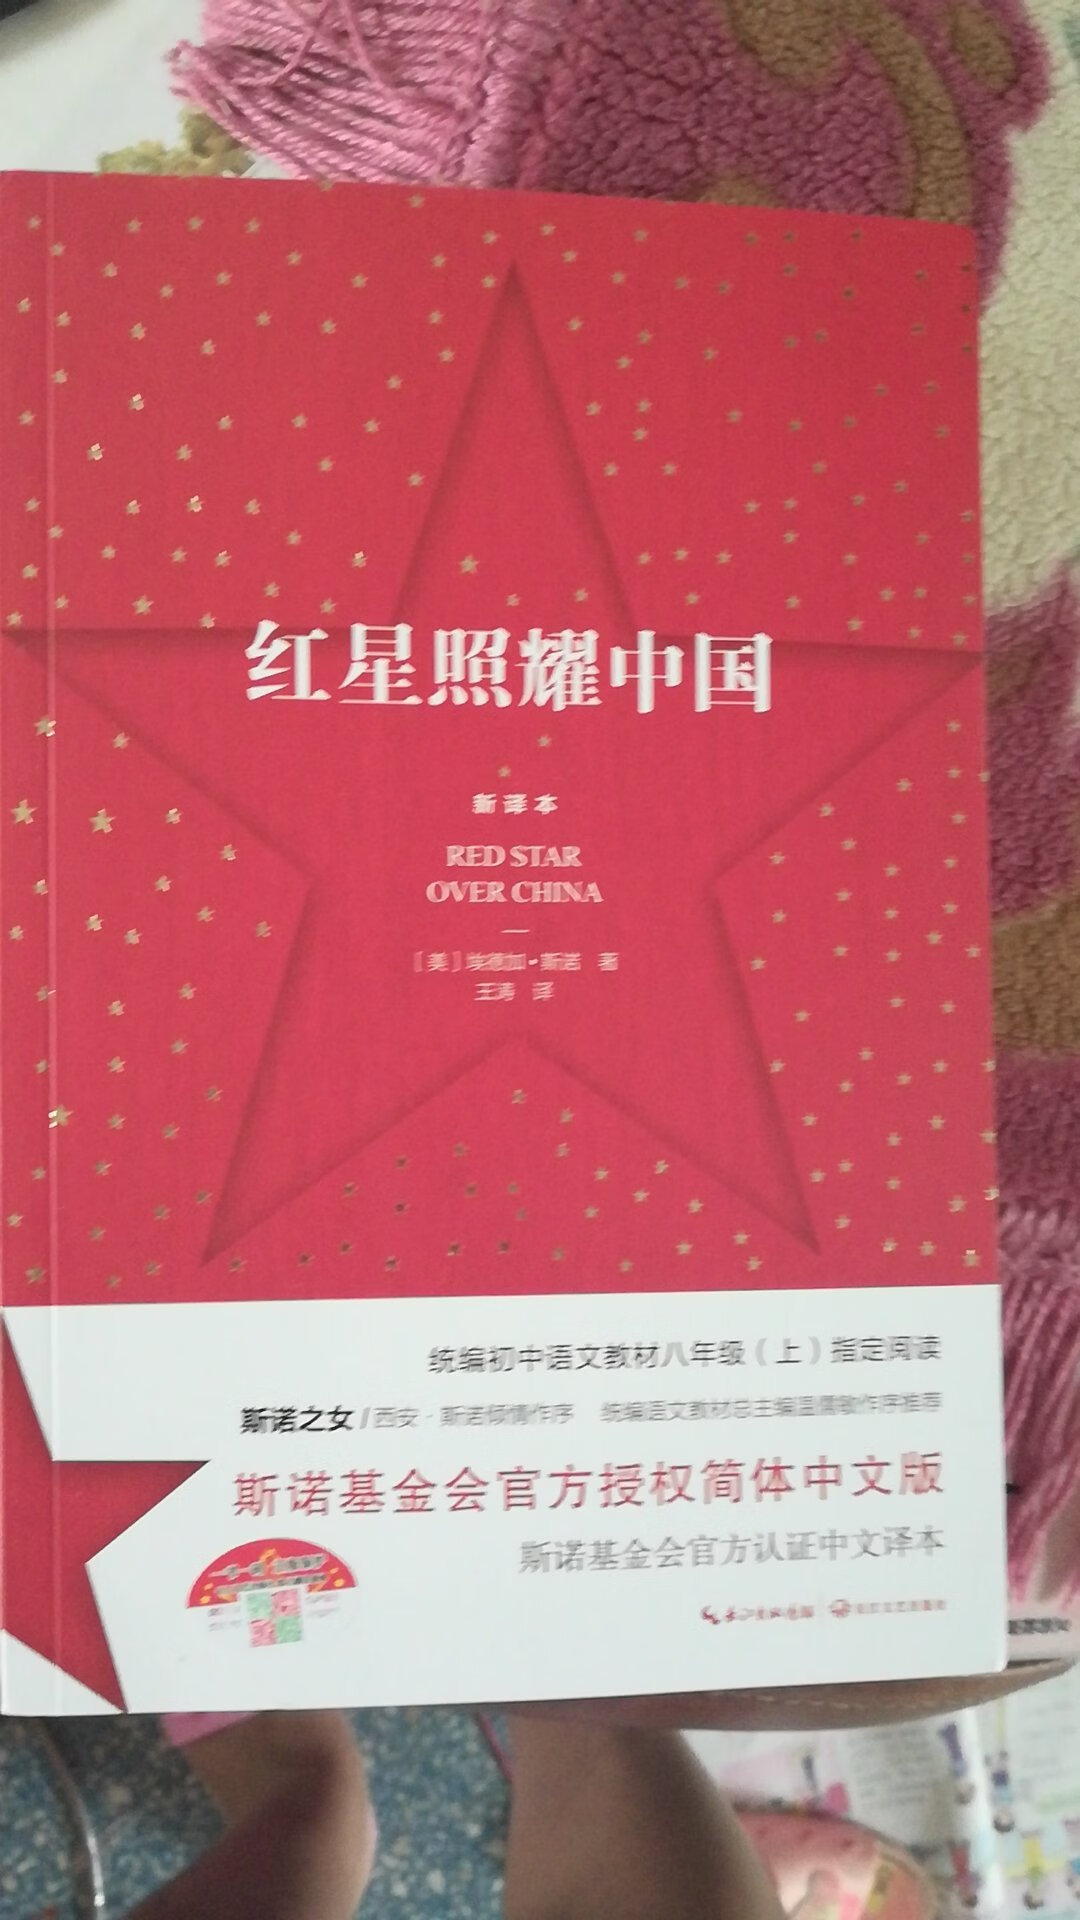 红星照耀中国新译本字迹清晰可见。